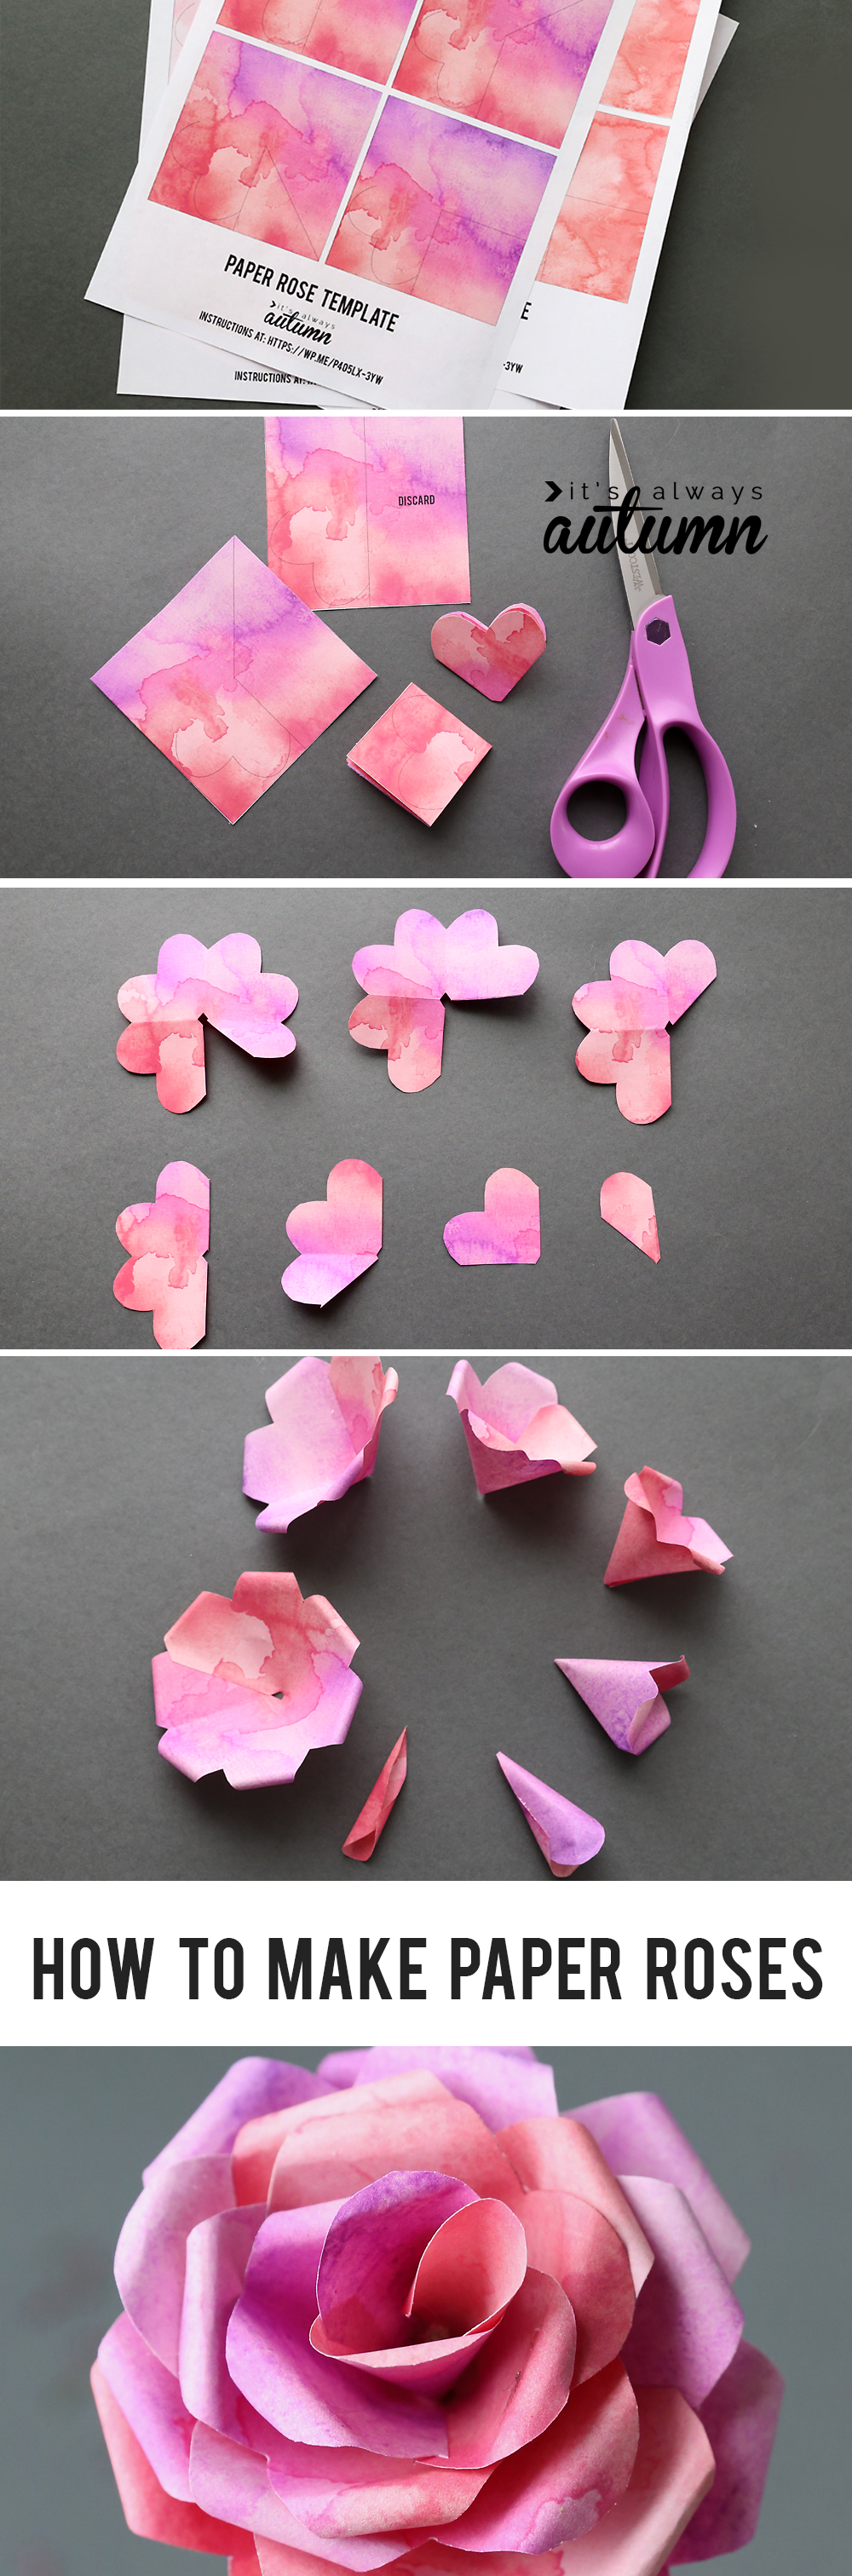 sticky note origami rose